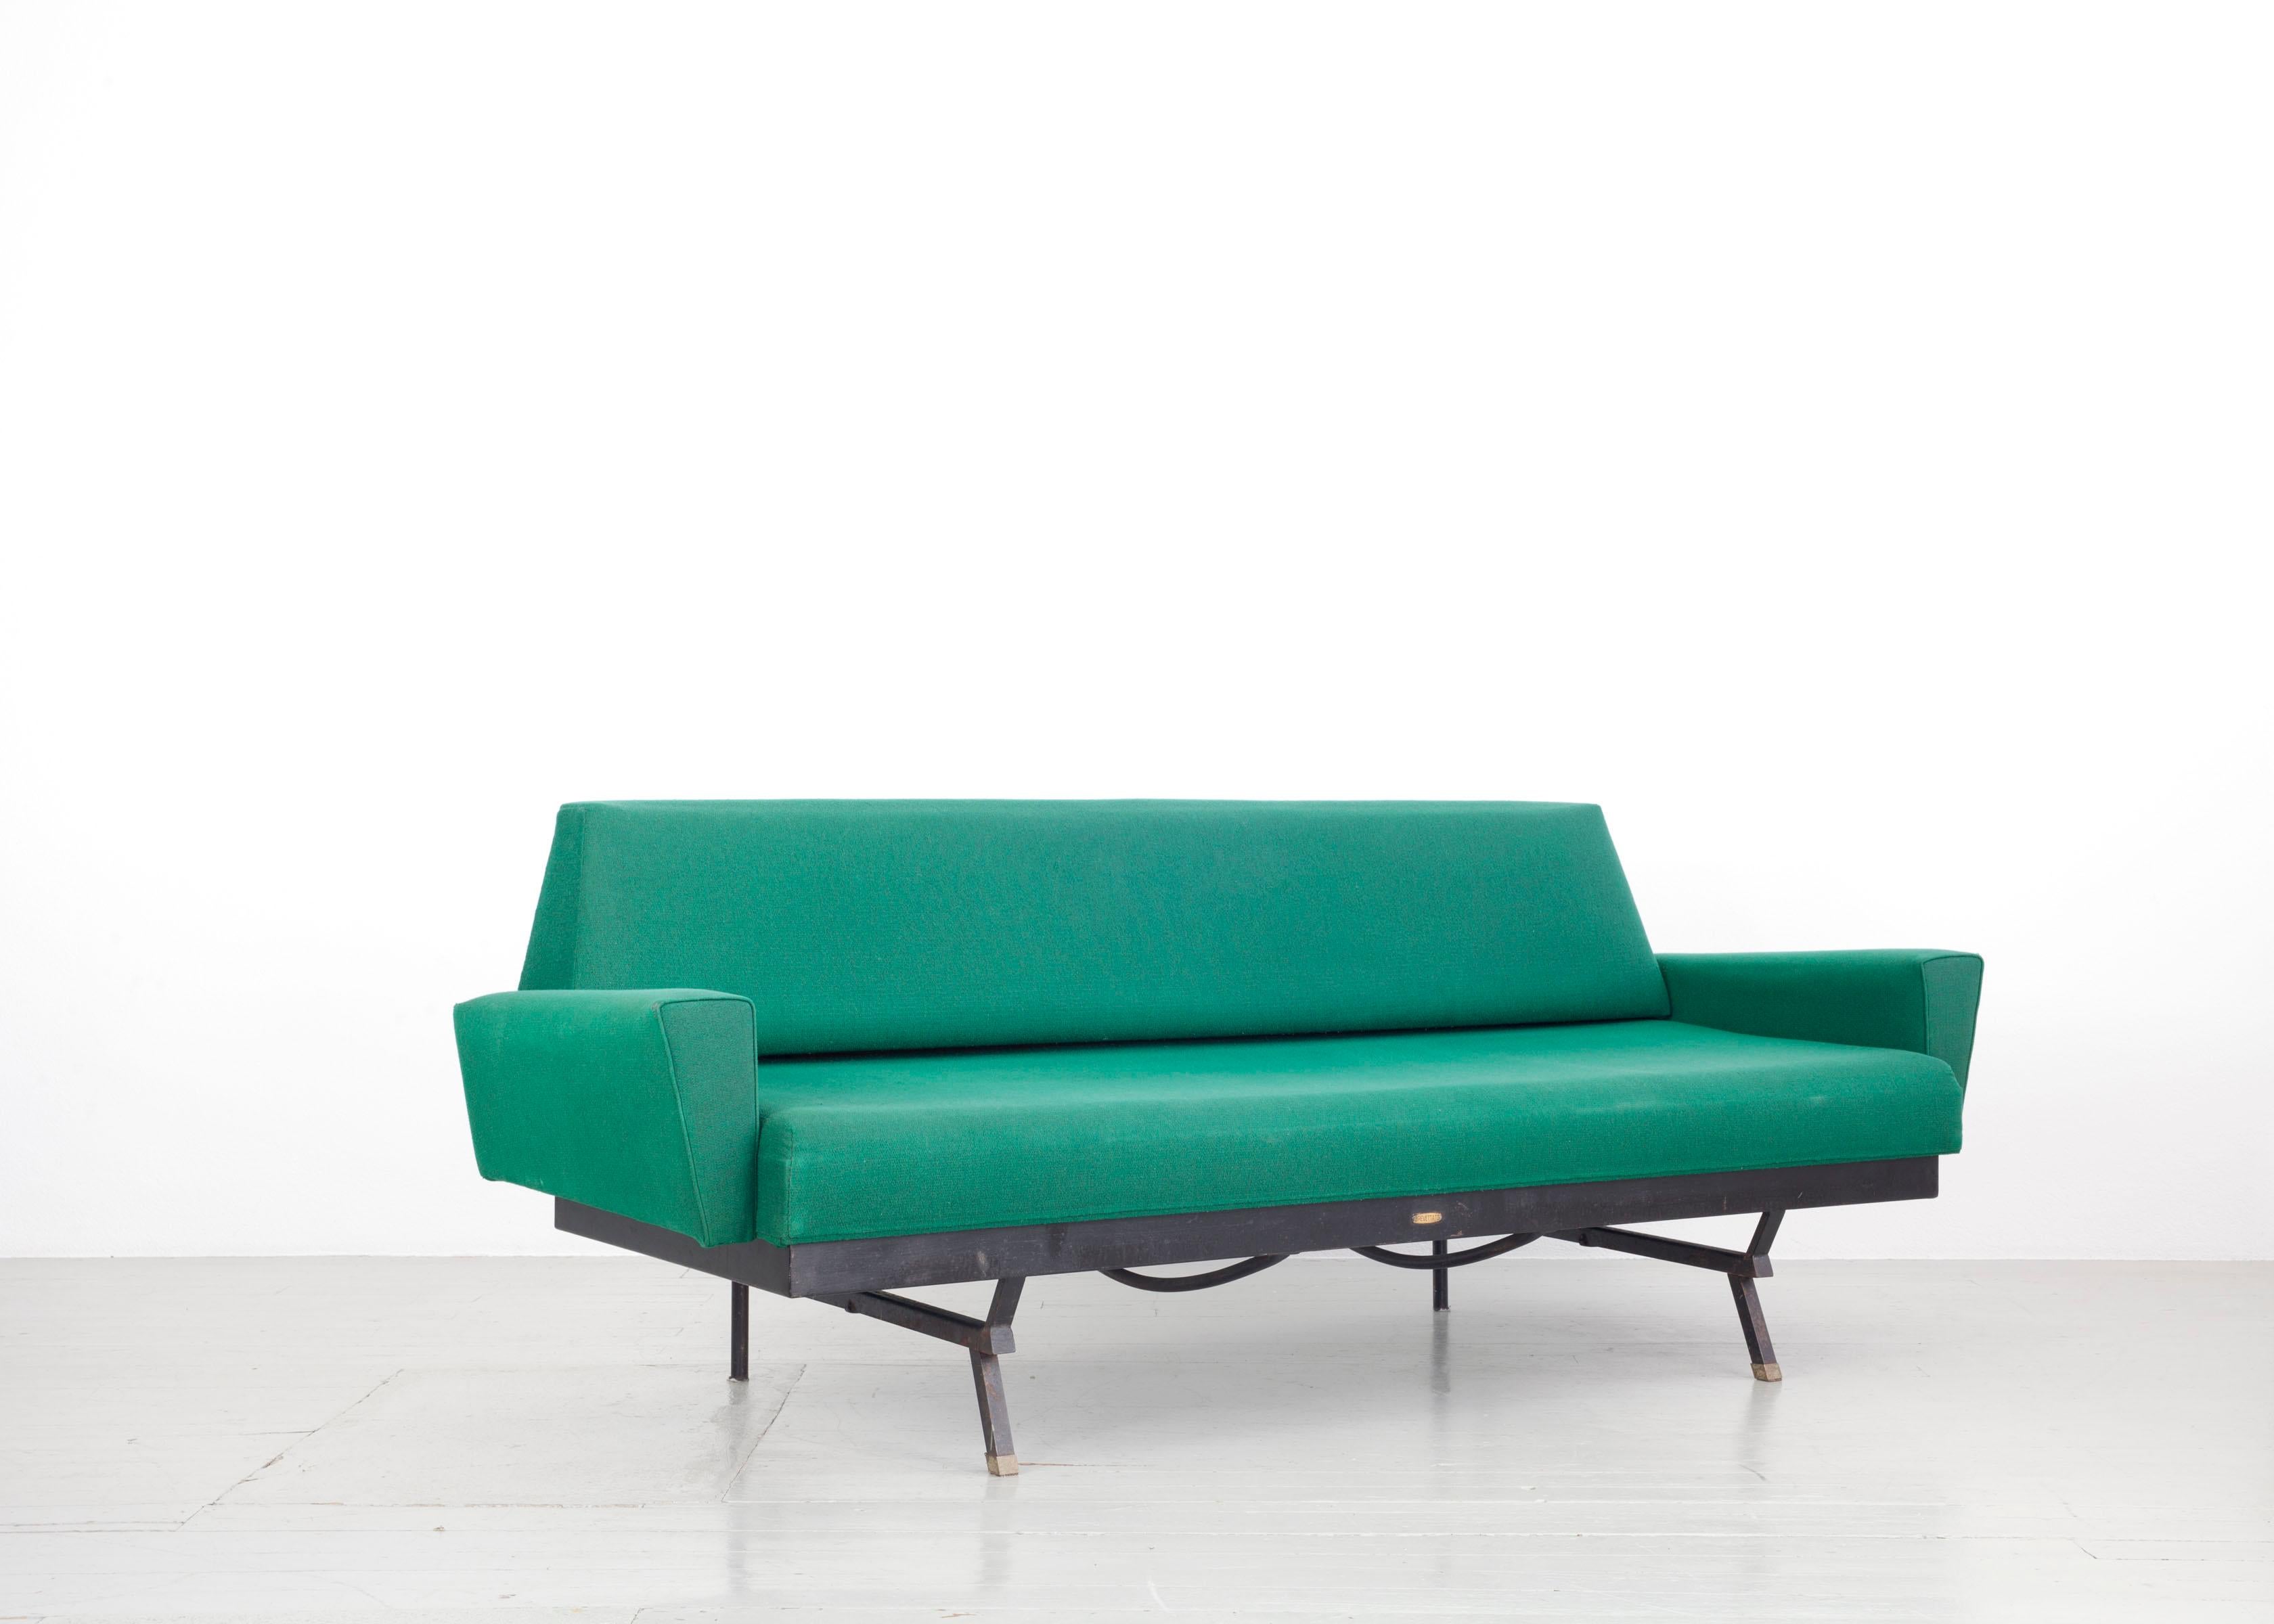 Ce canapé-lit italien a été conçu dans les années 1950. Les formes confèrent élégance et modernité à un design par ailleurs assez minimaliste. Le siège est pliable, de cette façon le canapé peut servir de lit, cependant, le matelas est absent. La